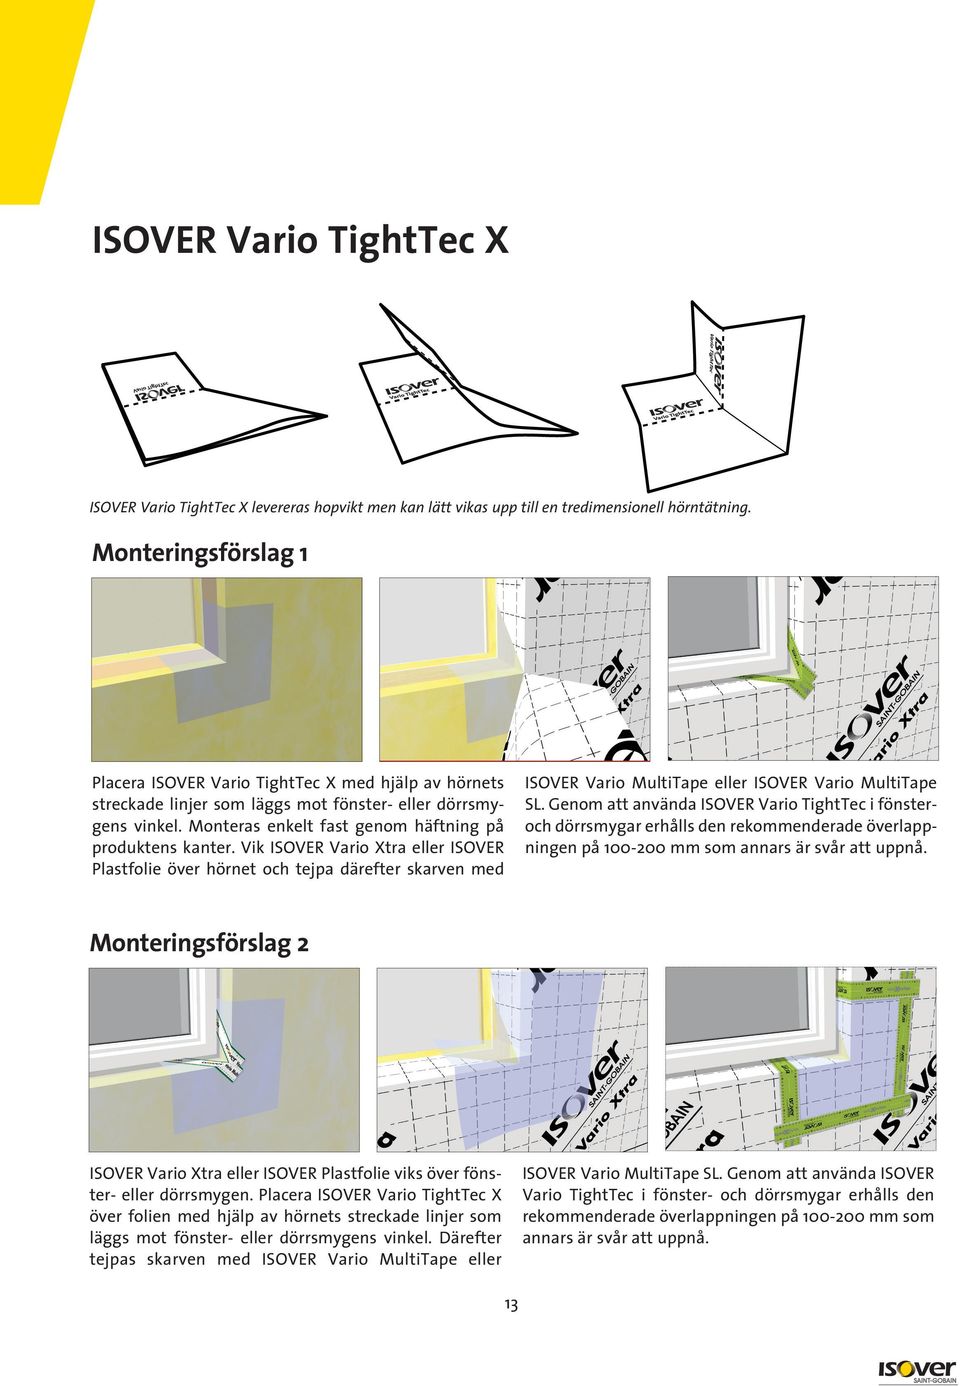 Vik ISOVER Vario Xtra eller ISOVER Plastfolie över hörnet och tejpa därefter skarven med ISOVER Vario MultiTape eller ISOVER Vario MultiTape SL.